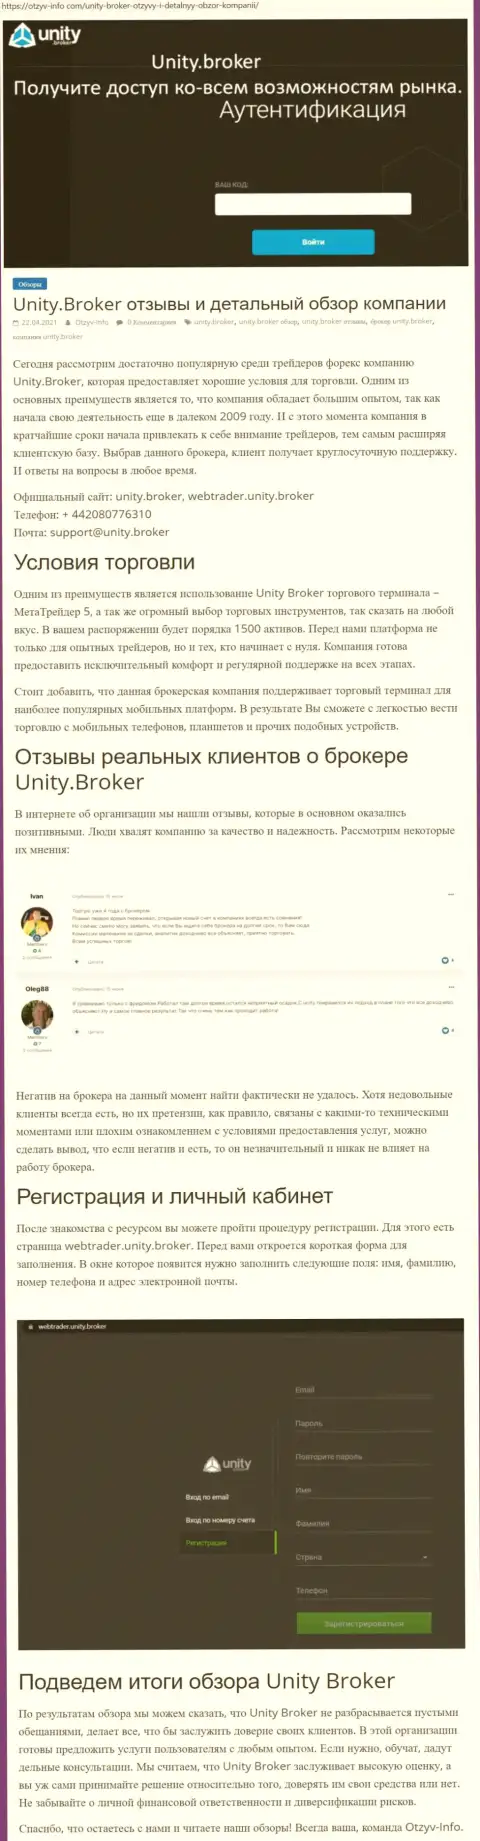 Обзор деятельности ФОРЕКС-дилинговой компании Unity Broker на сайте Otzyv-Info Com